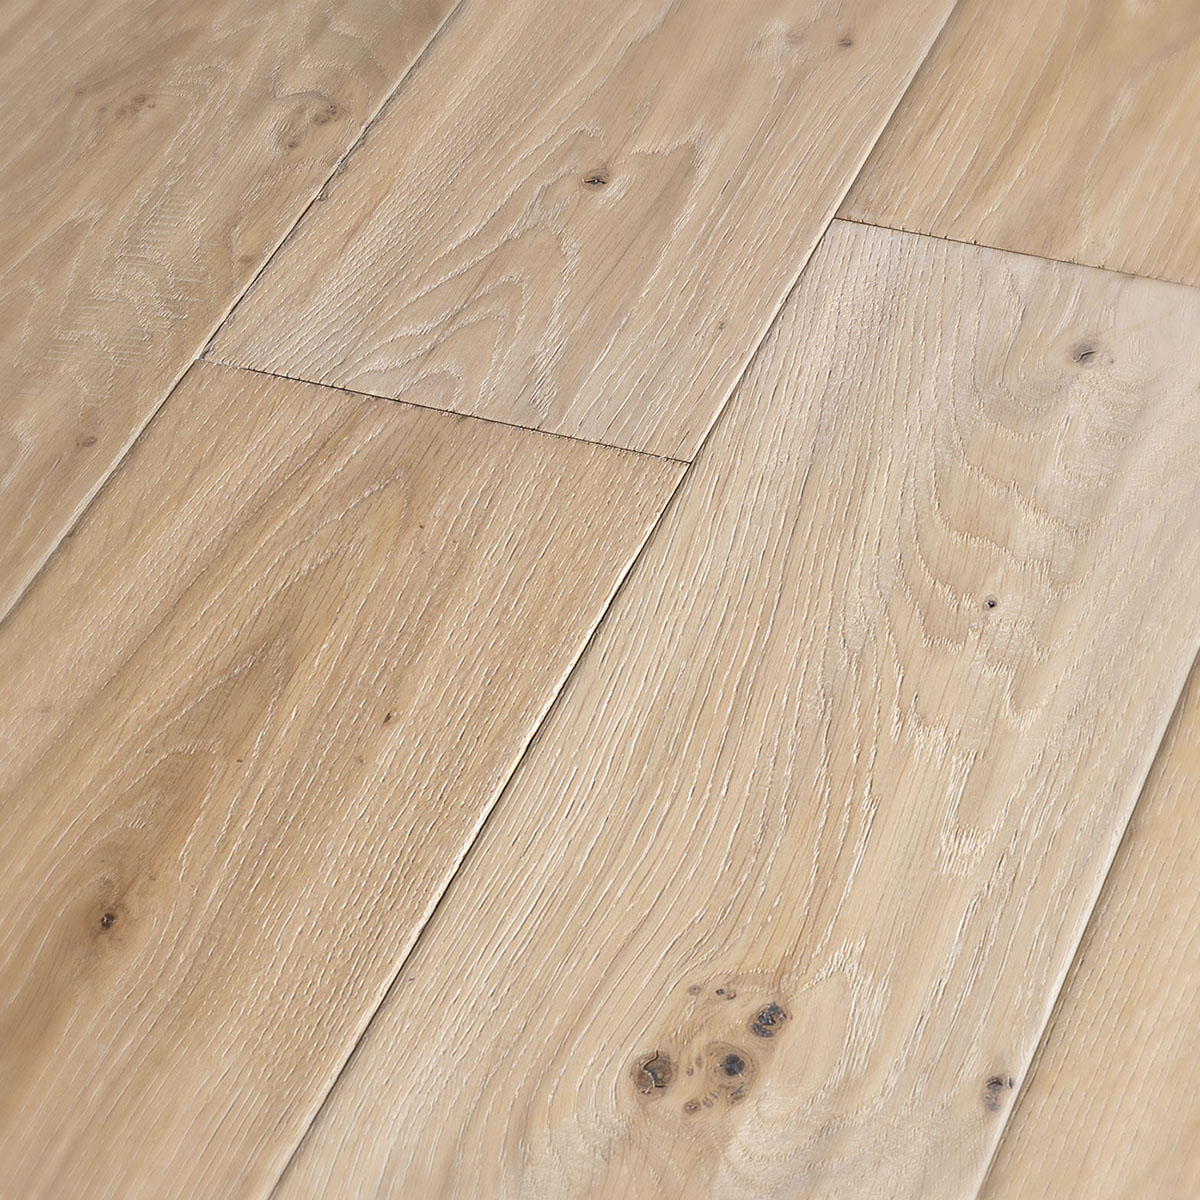 Hazelhead - Rustic Grade Distressed Engineered Oak Floor